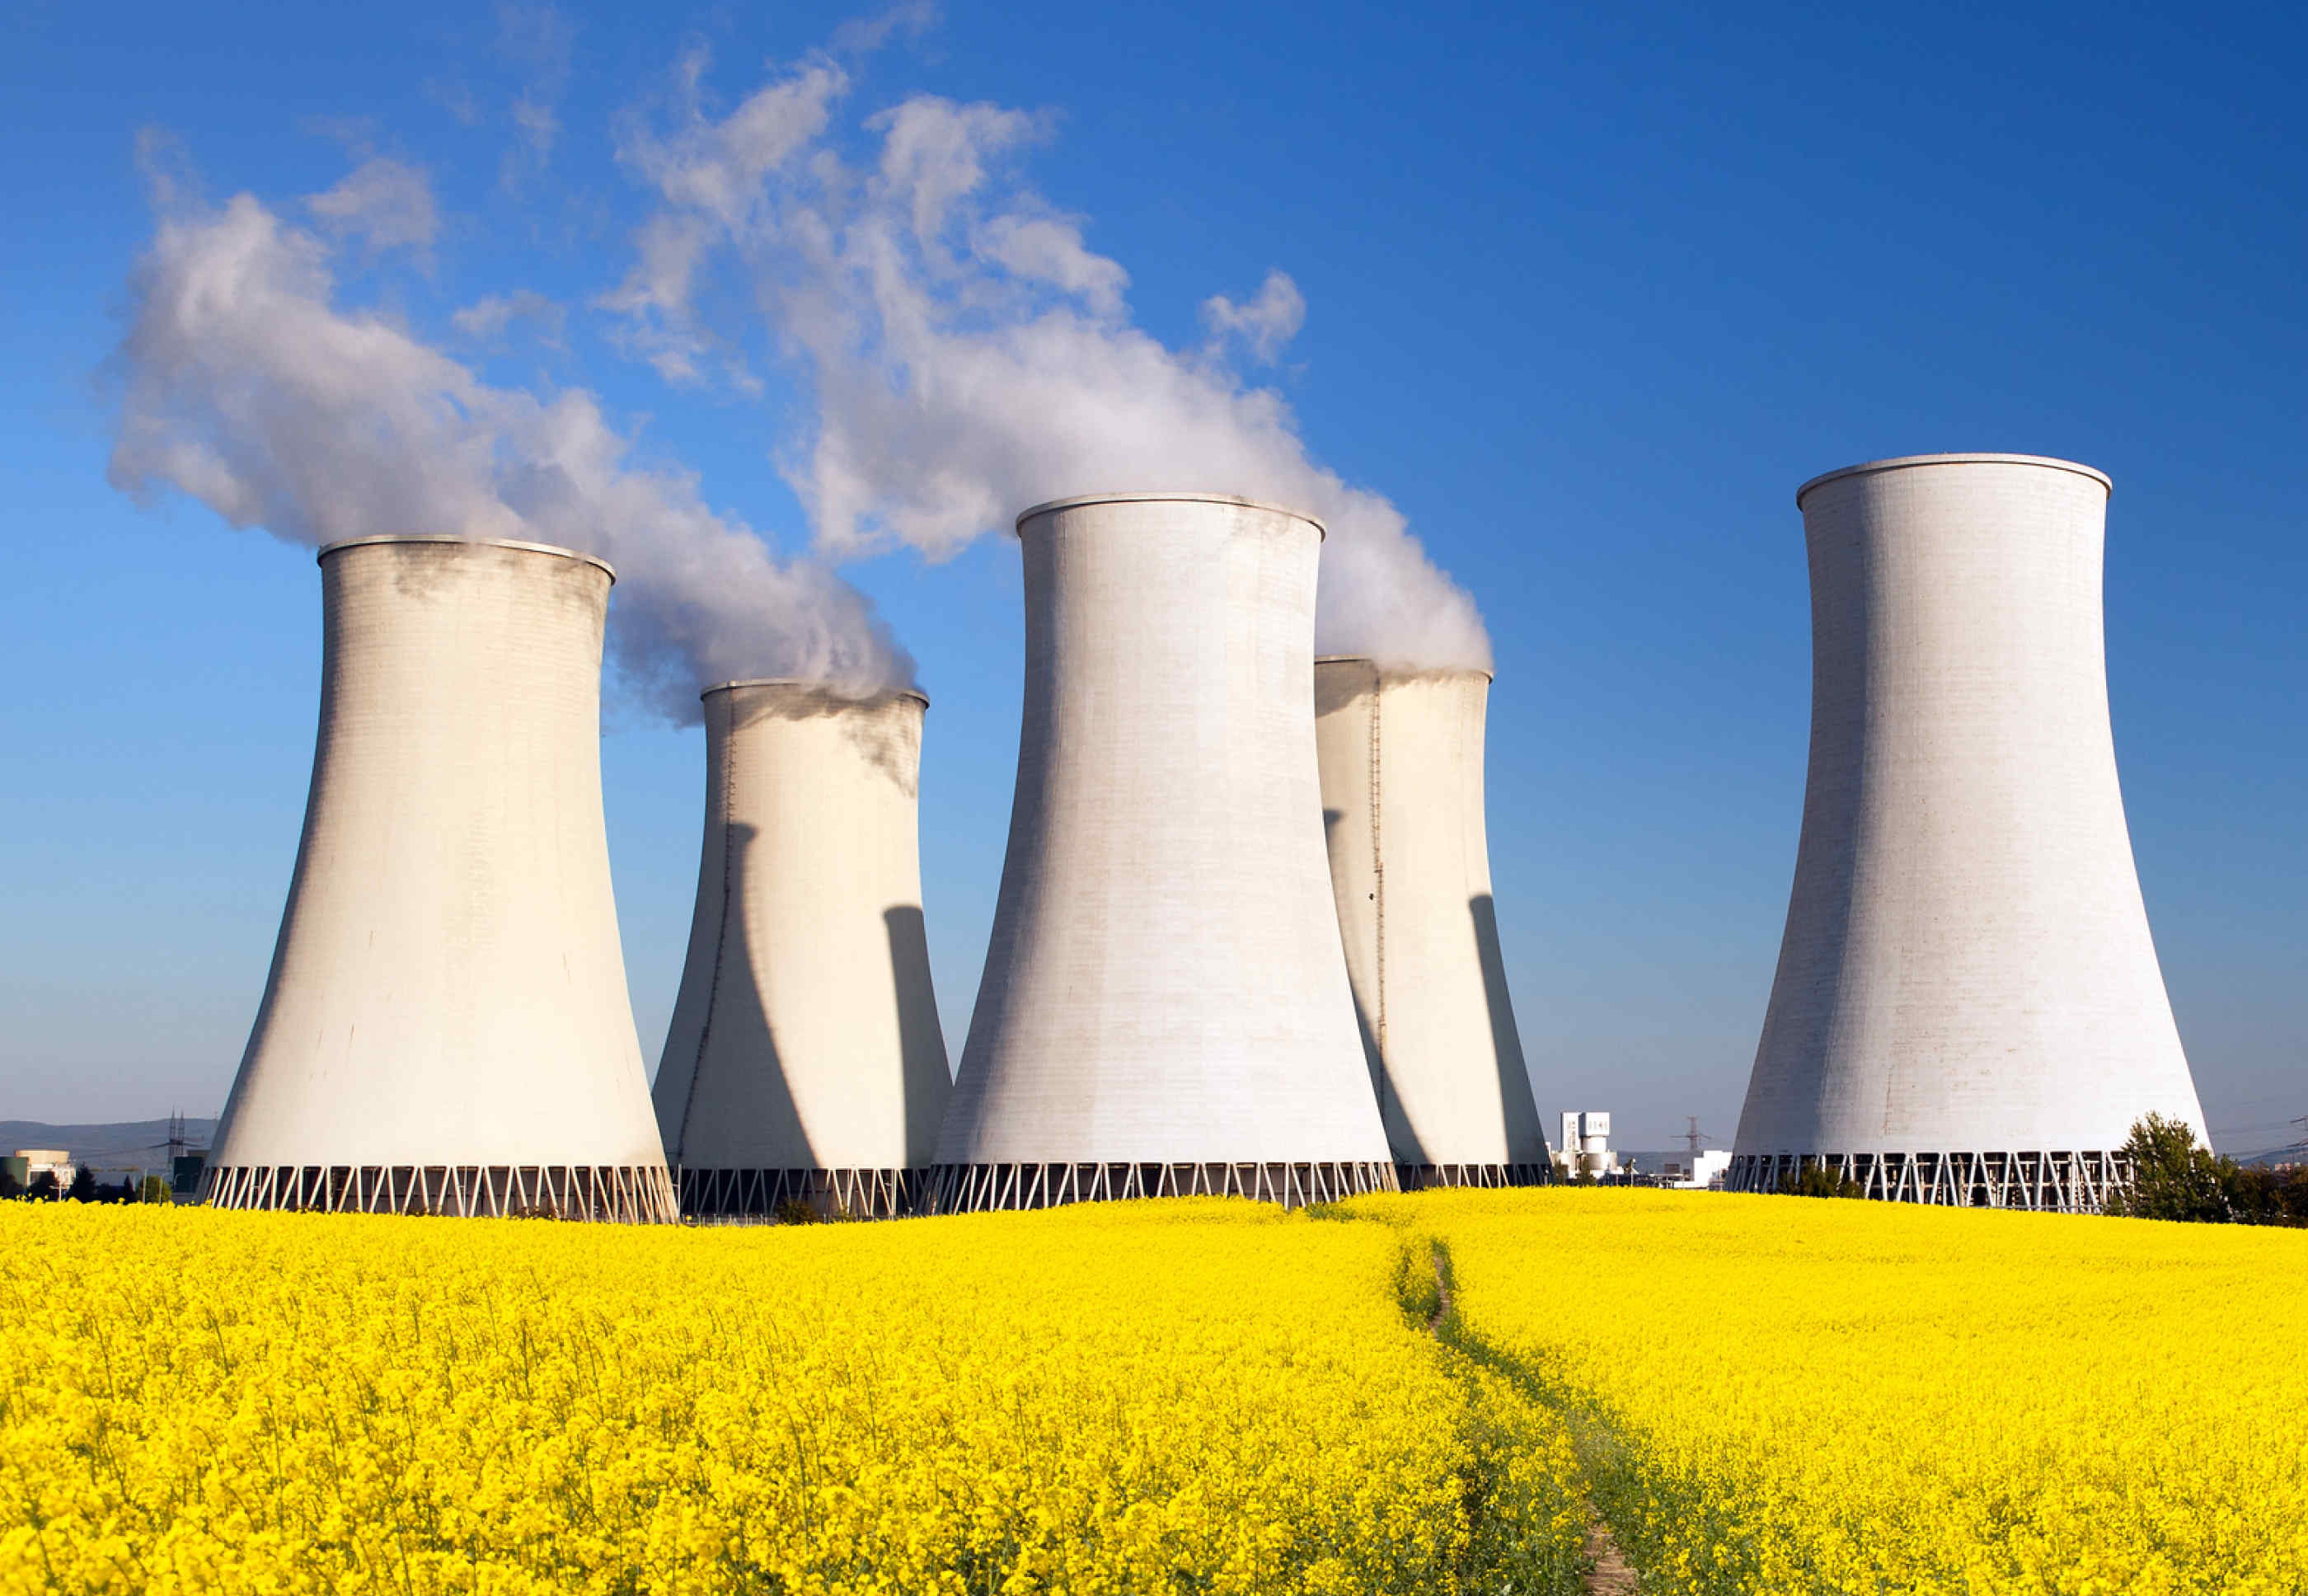 Βρετανία: Σχέδια για την κατασκευή επτά νέων πυρηνικών σταθμών παραγωγής ενέργειας